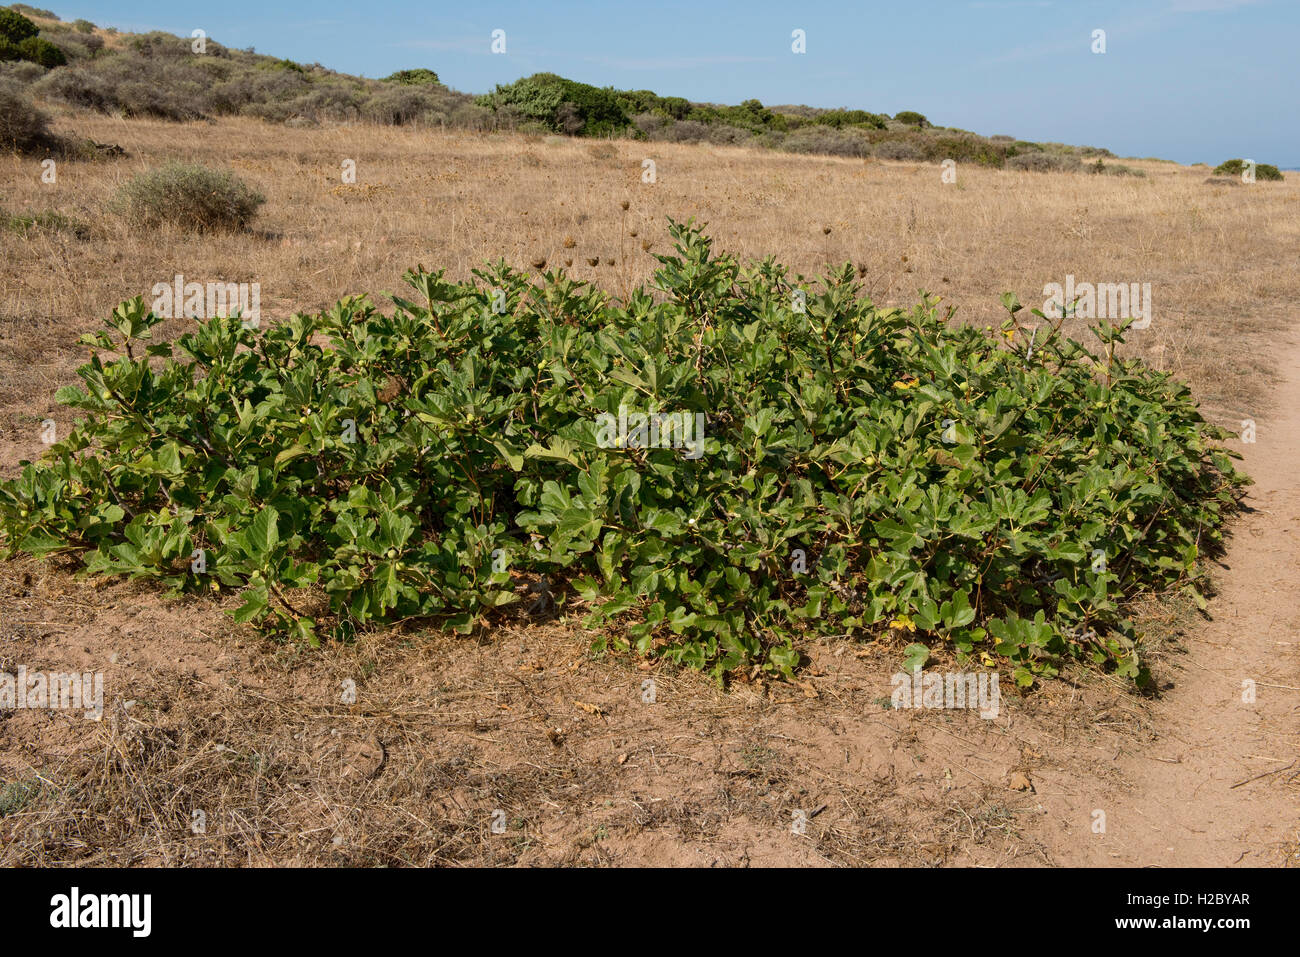 Wilden Feigenbaum Ficus Carica, niederwerfen Strauch / Baum an der Küste von Sardinien, September Stockfoto